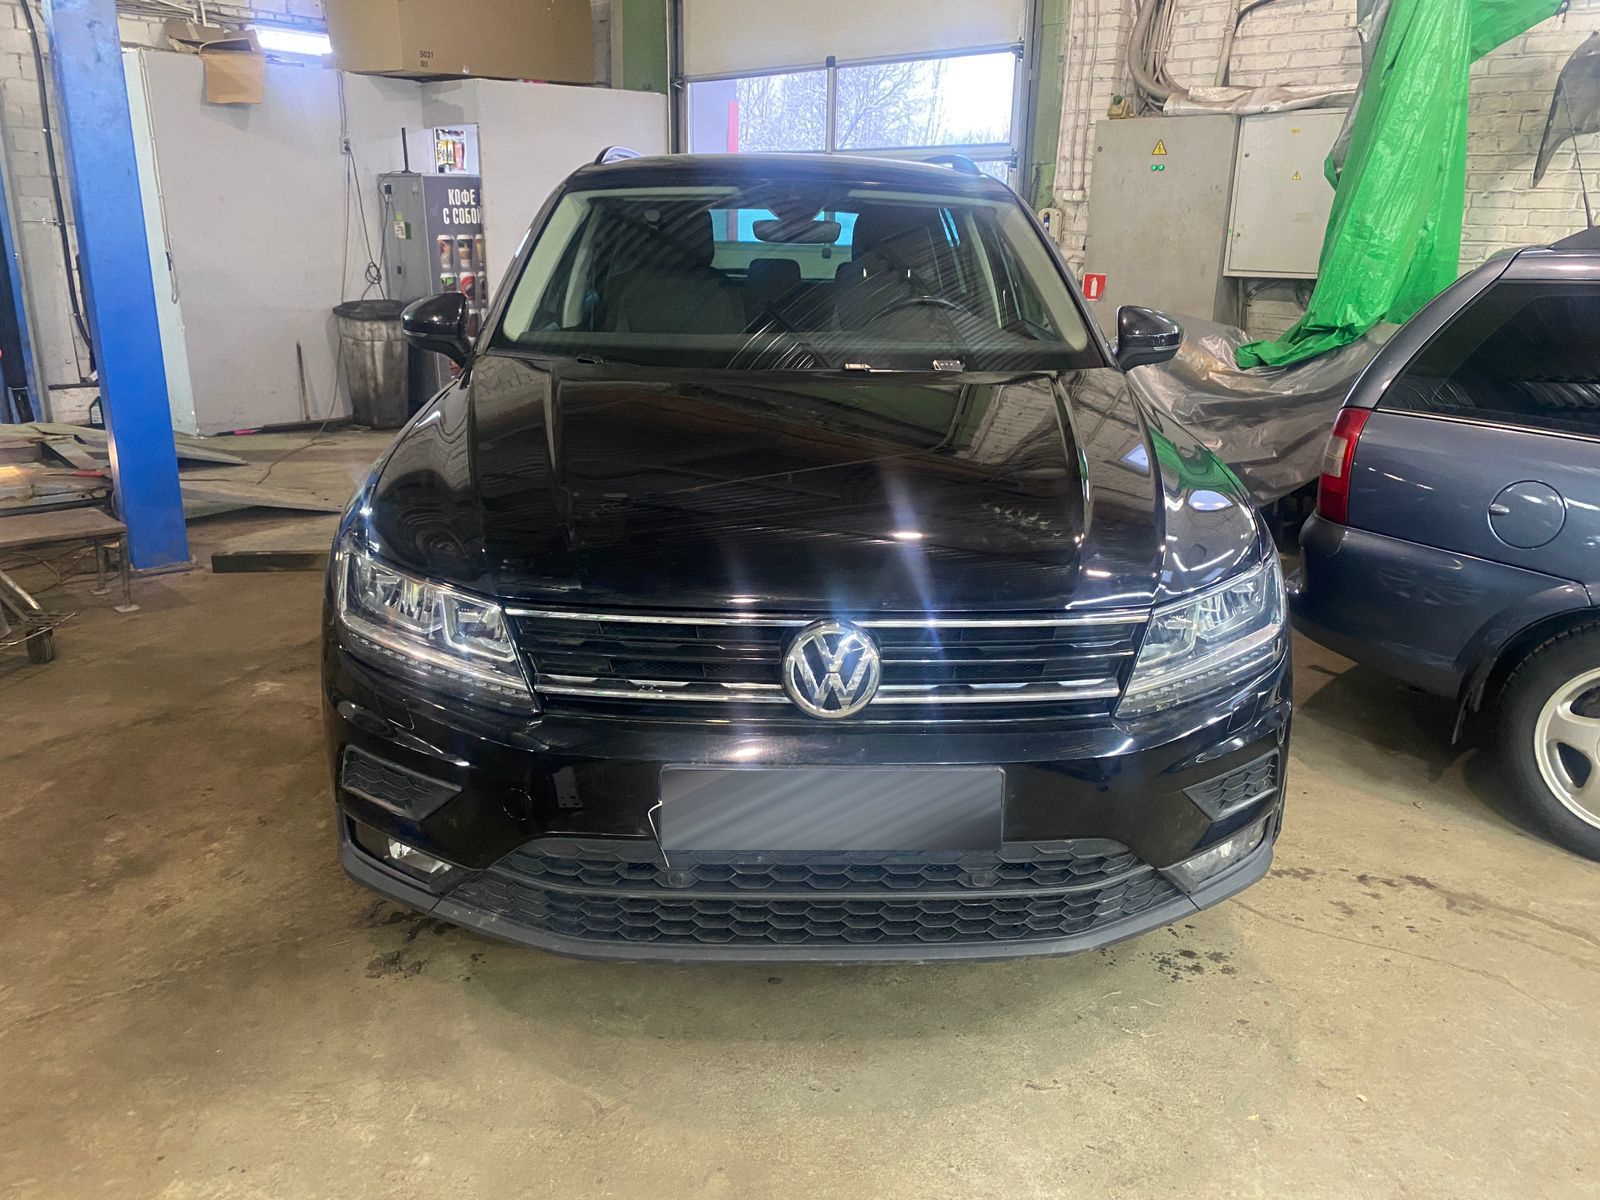 Volkswagen Tiguan 2.0 2020 г.в. в автосервисе в Колпино, Рабочий пер. 3. Замена + окрас капота, Ремонт электропроводки, Ремонт и окрас переднего бампера, Замена лобового стекла.